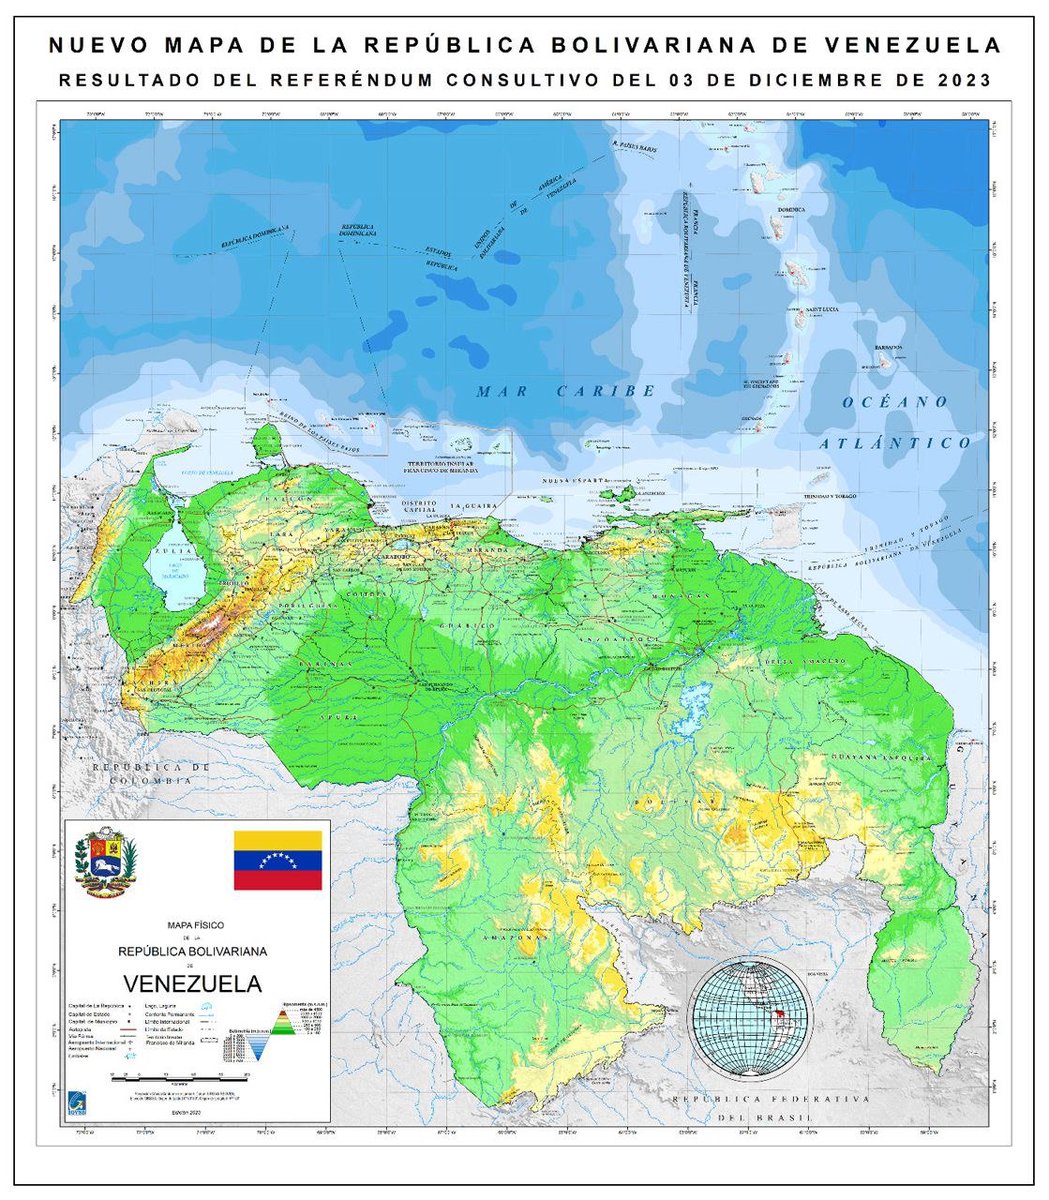 Nuevo mapa de Venezuela, resultado del referendum consultivo de Diciembre 03 de 2023, incluye el territorio del Esequibo